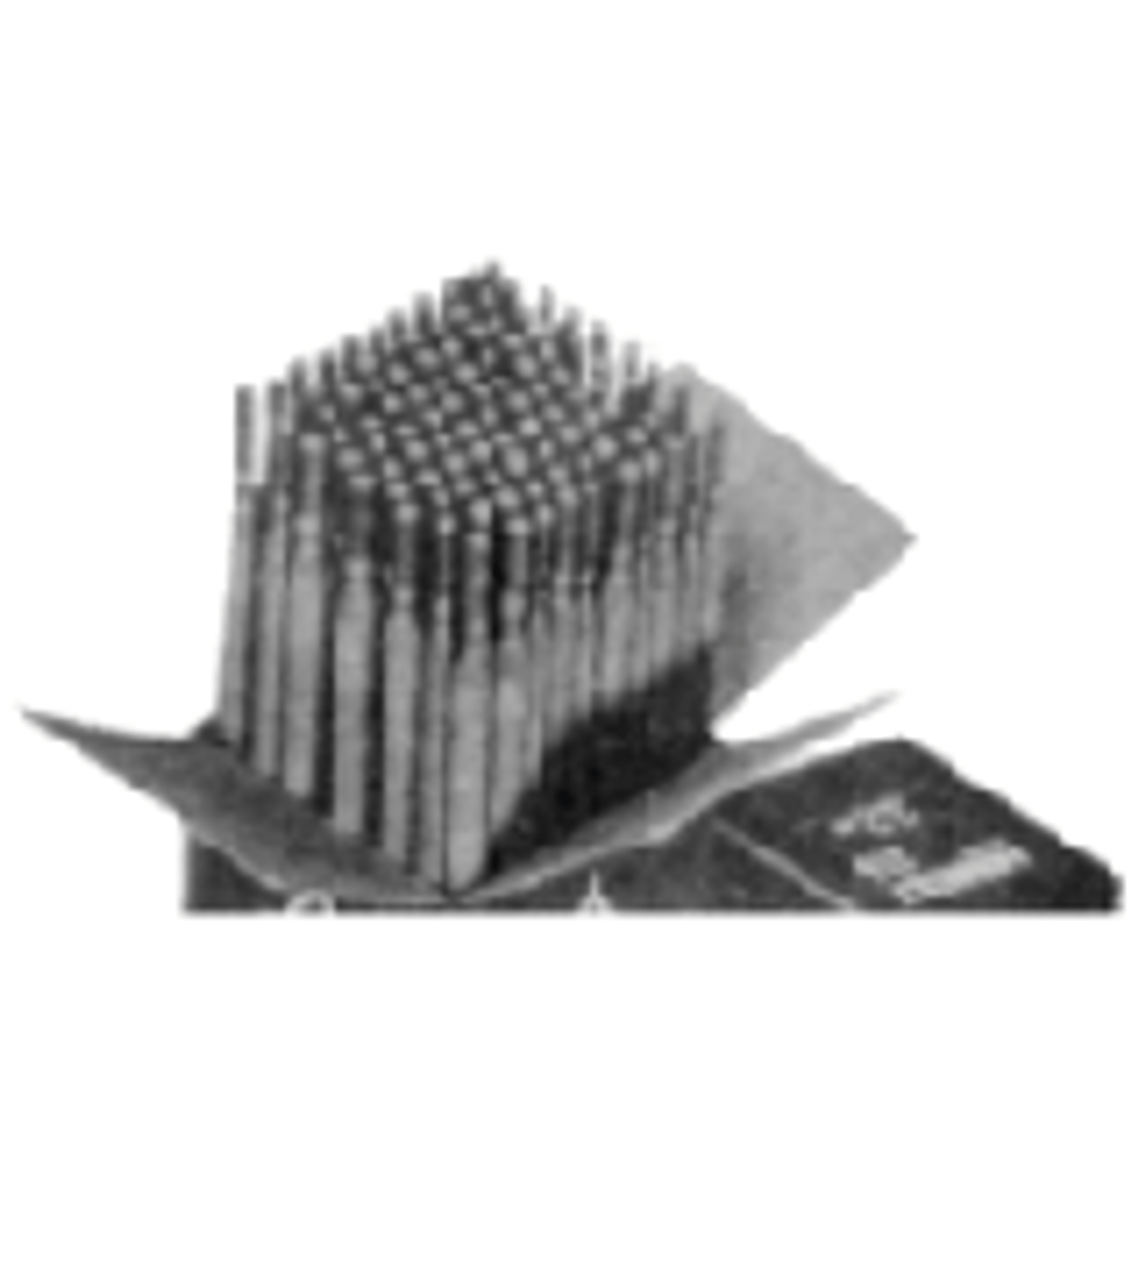 IMPA 850737 WELDING ELECTRODES 4,0mm box 2,0 kg. CAST IRON